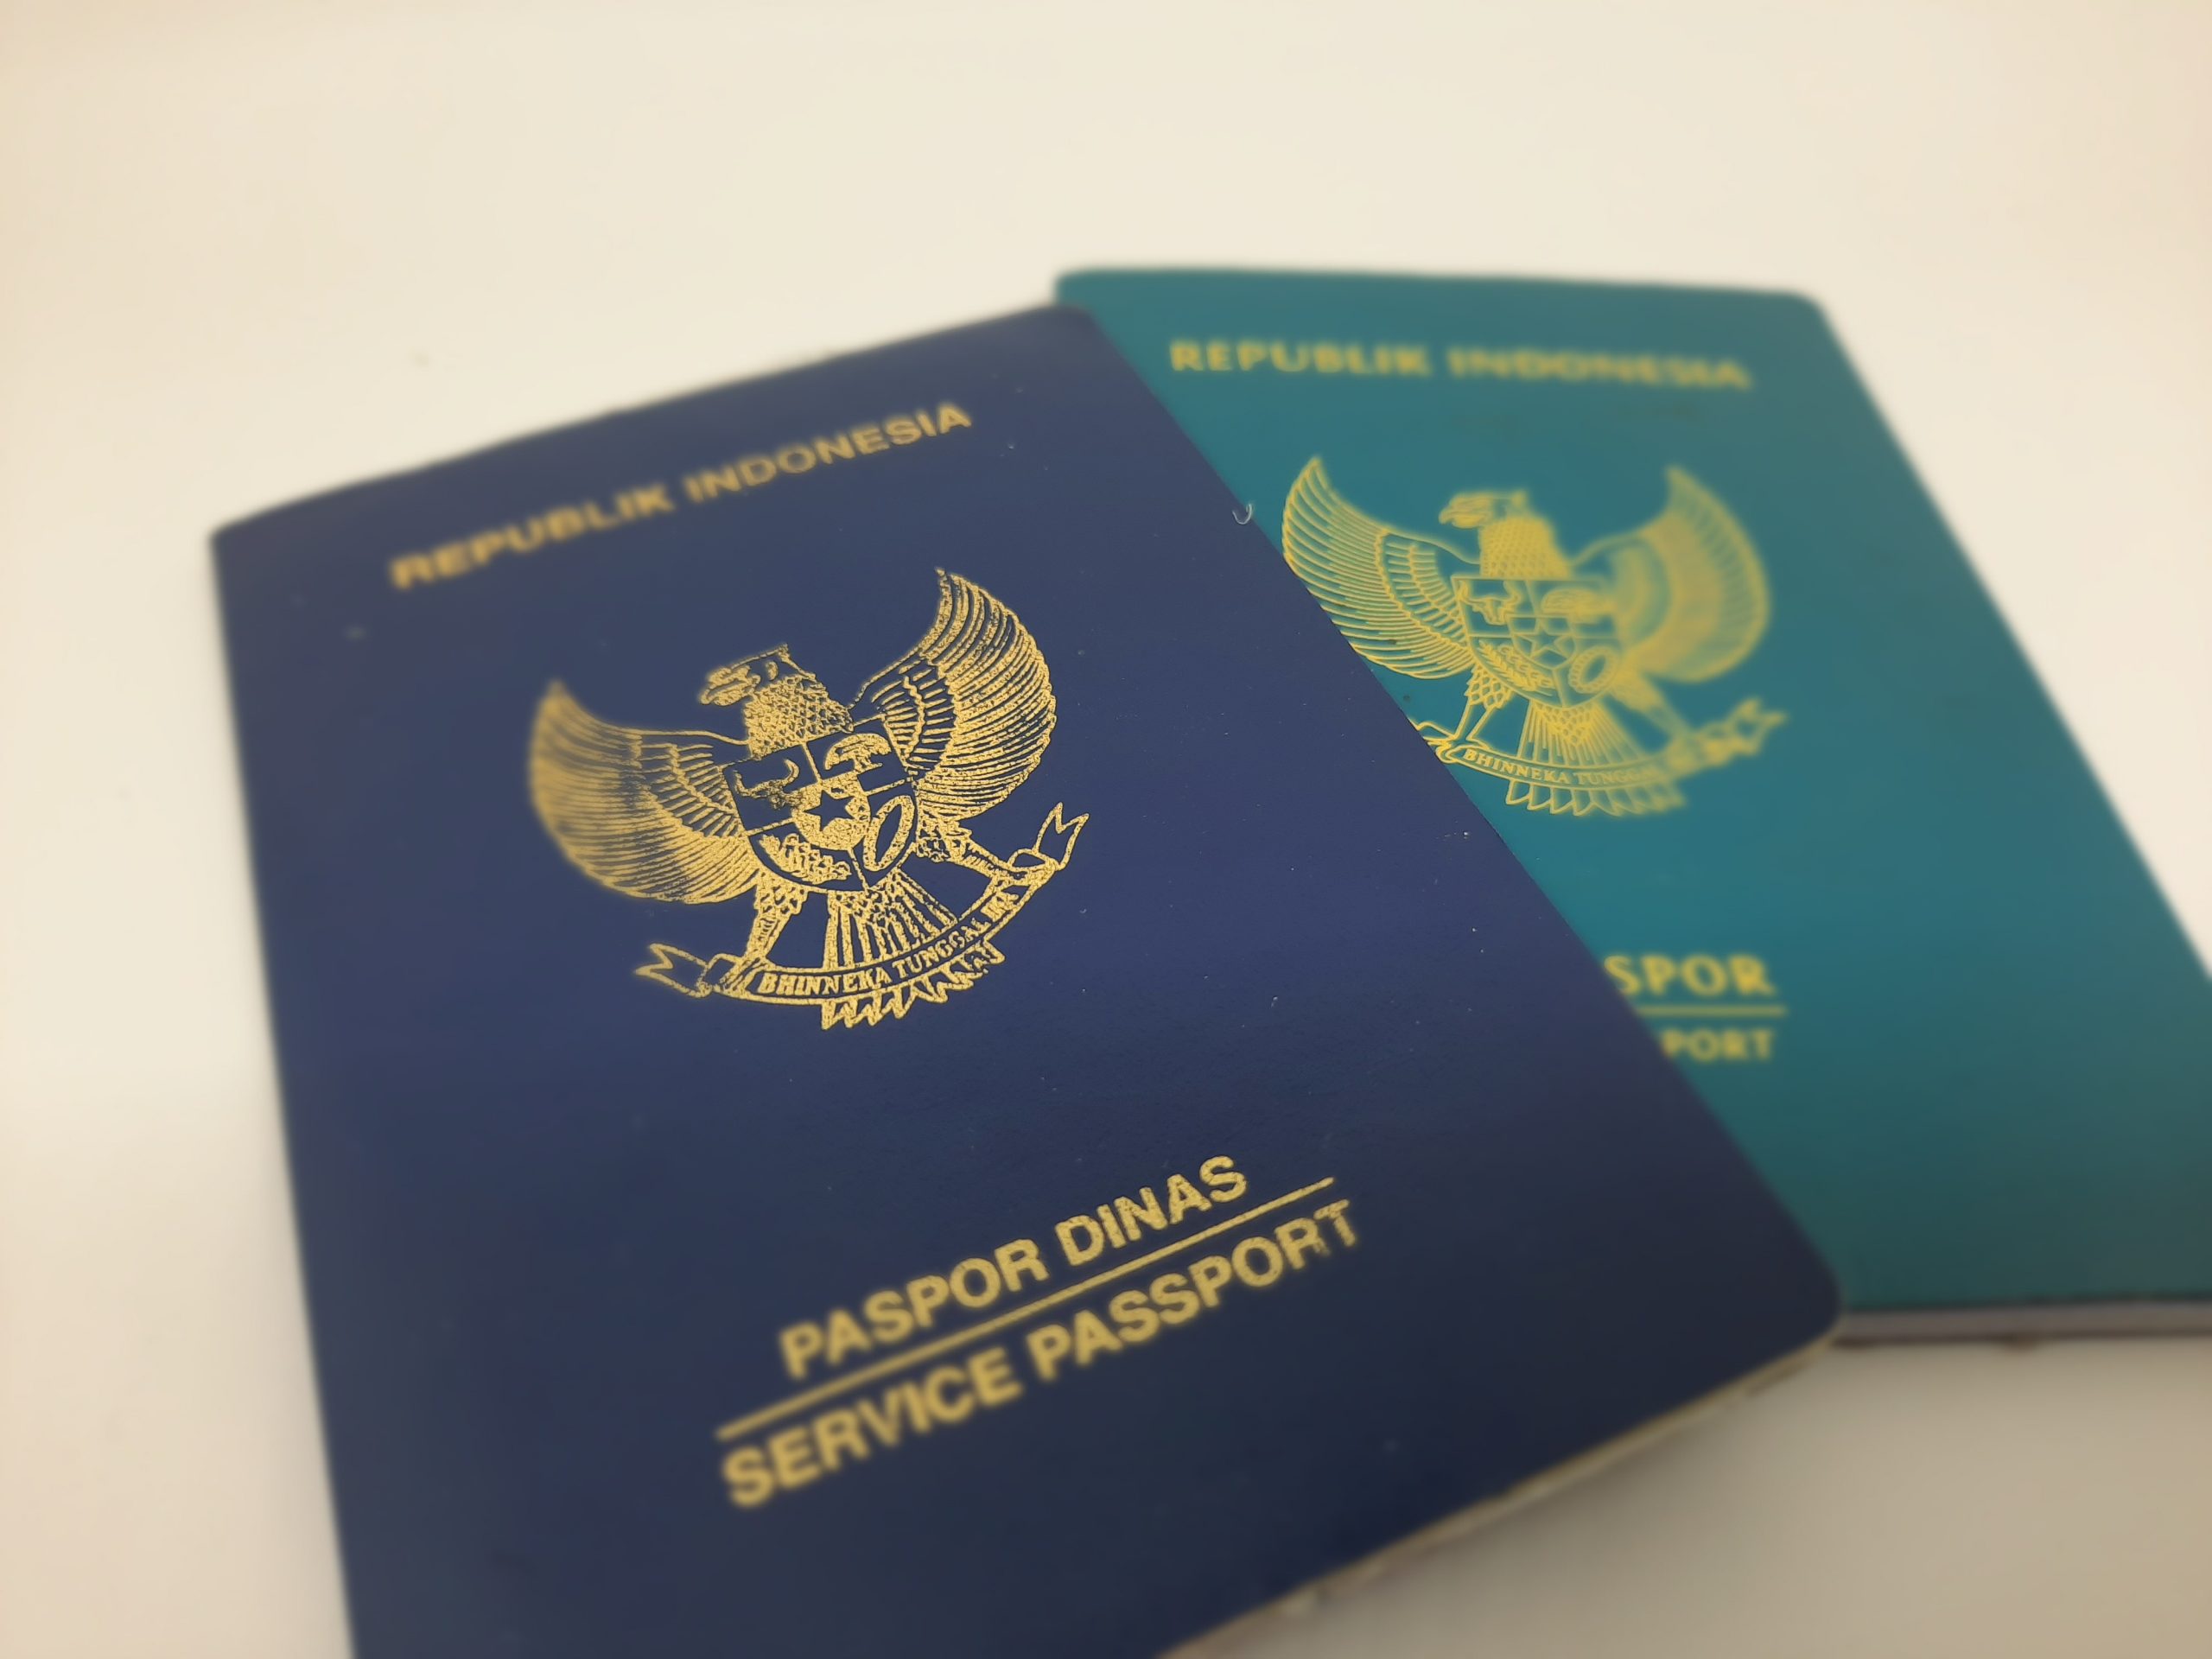 Indonesia, Suriname share free visas